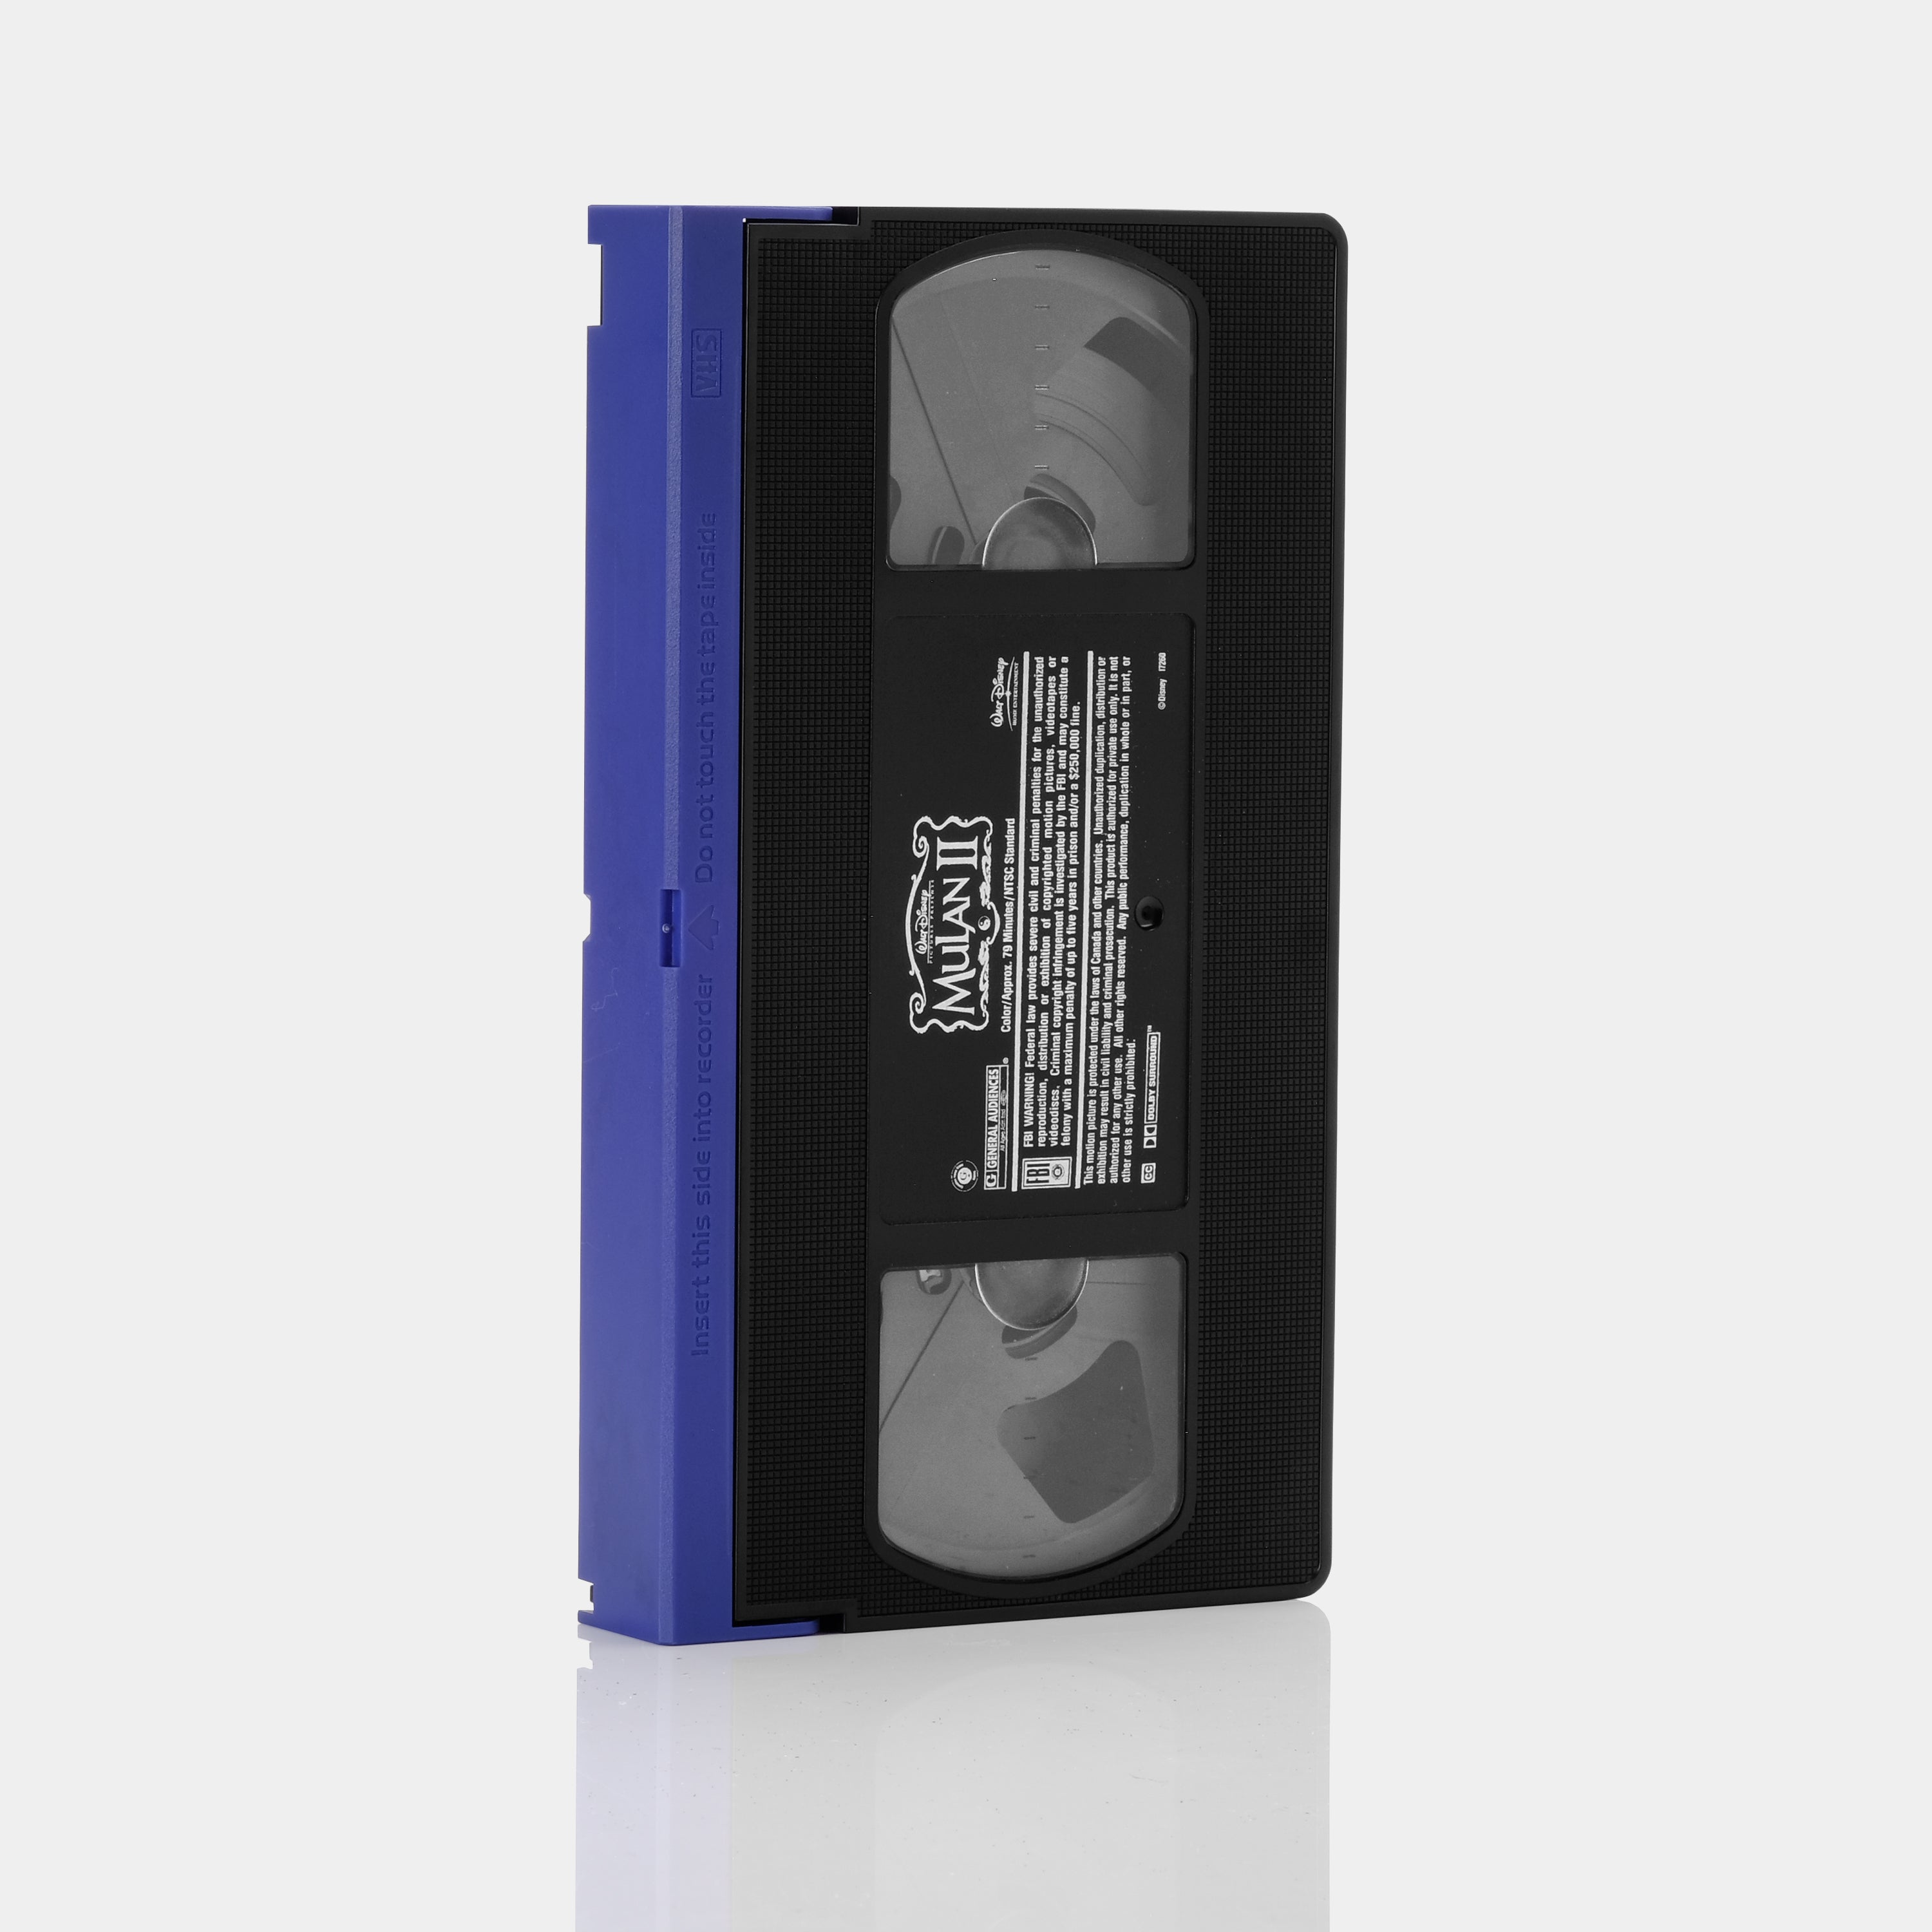 Mulan II VHS Tape